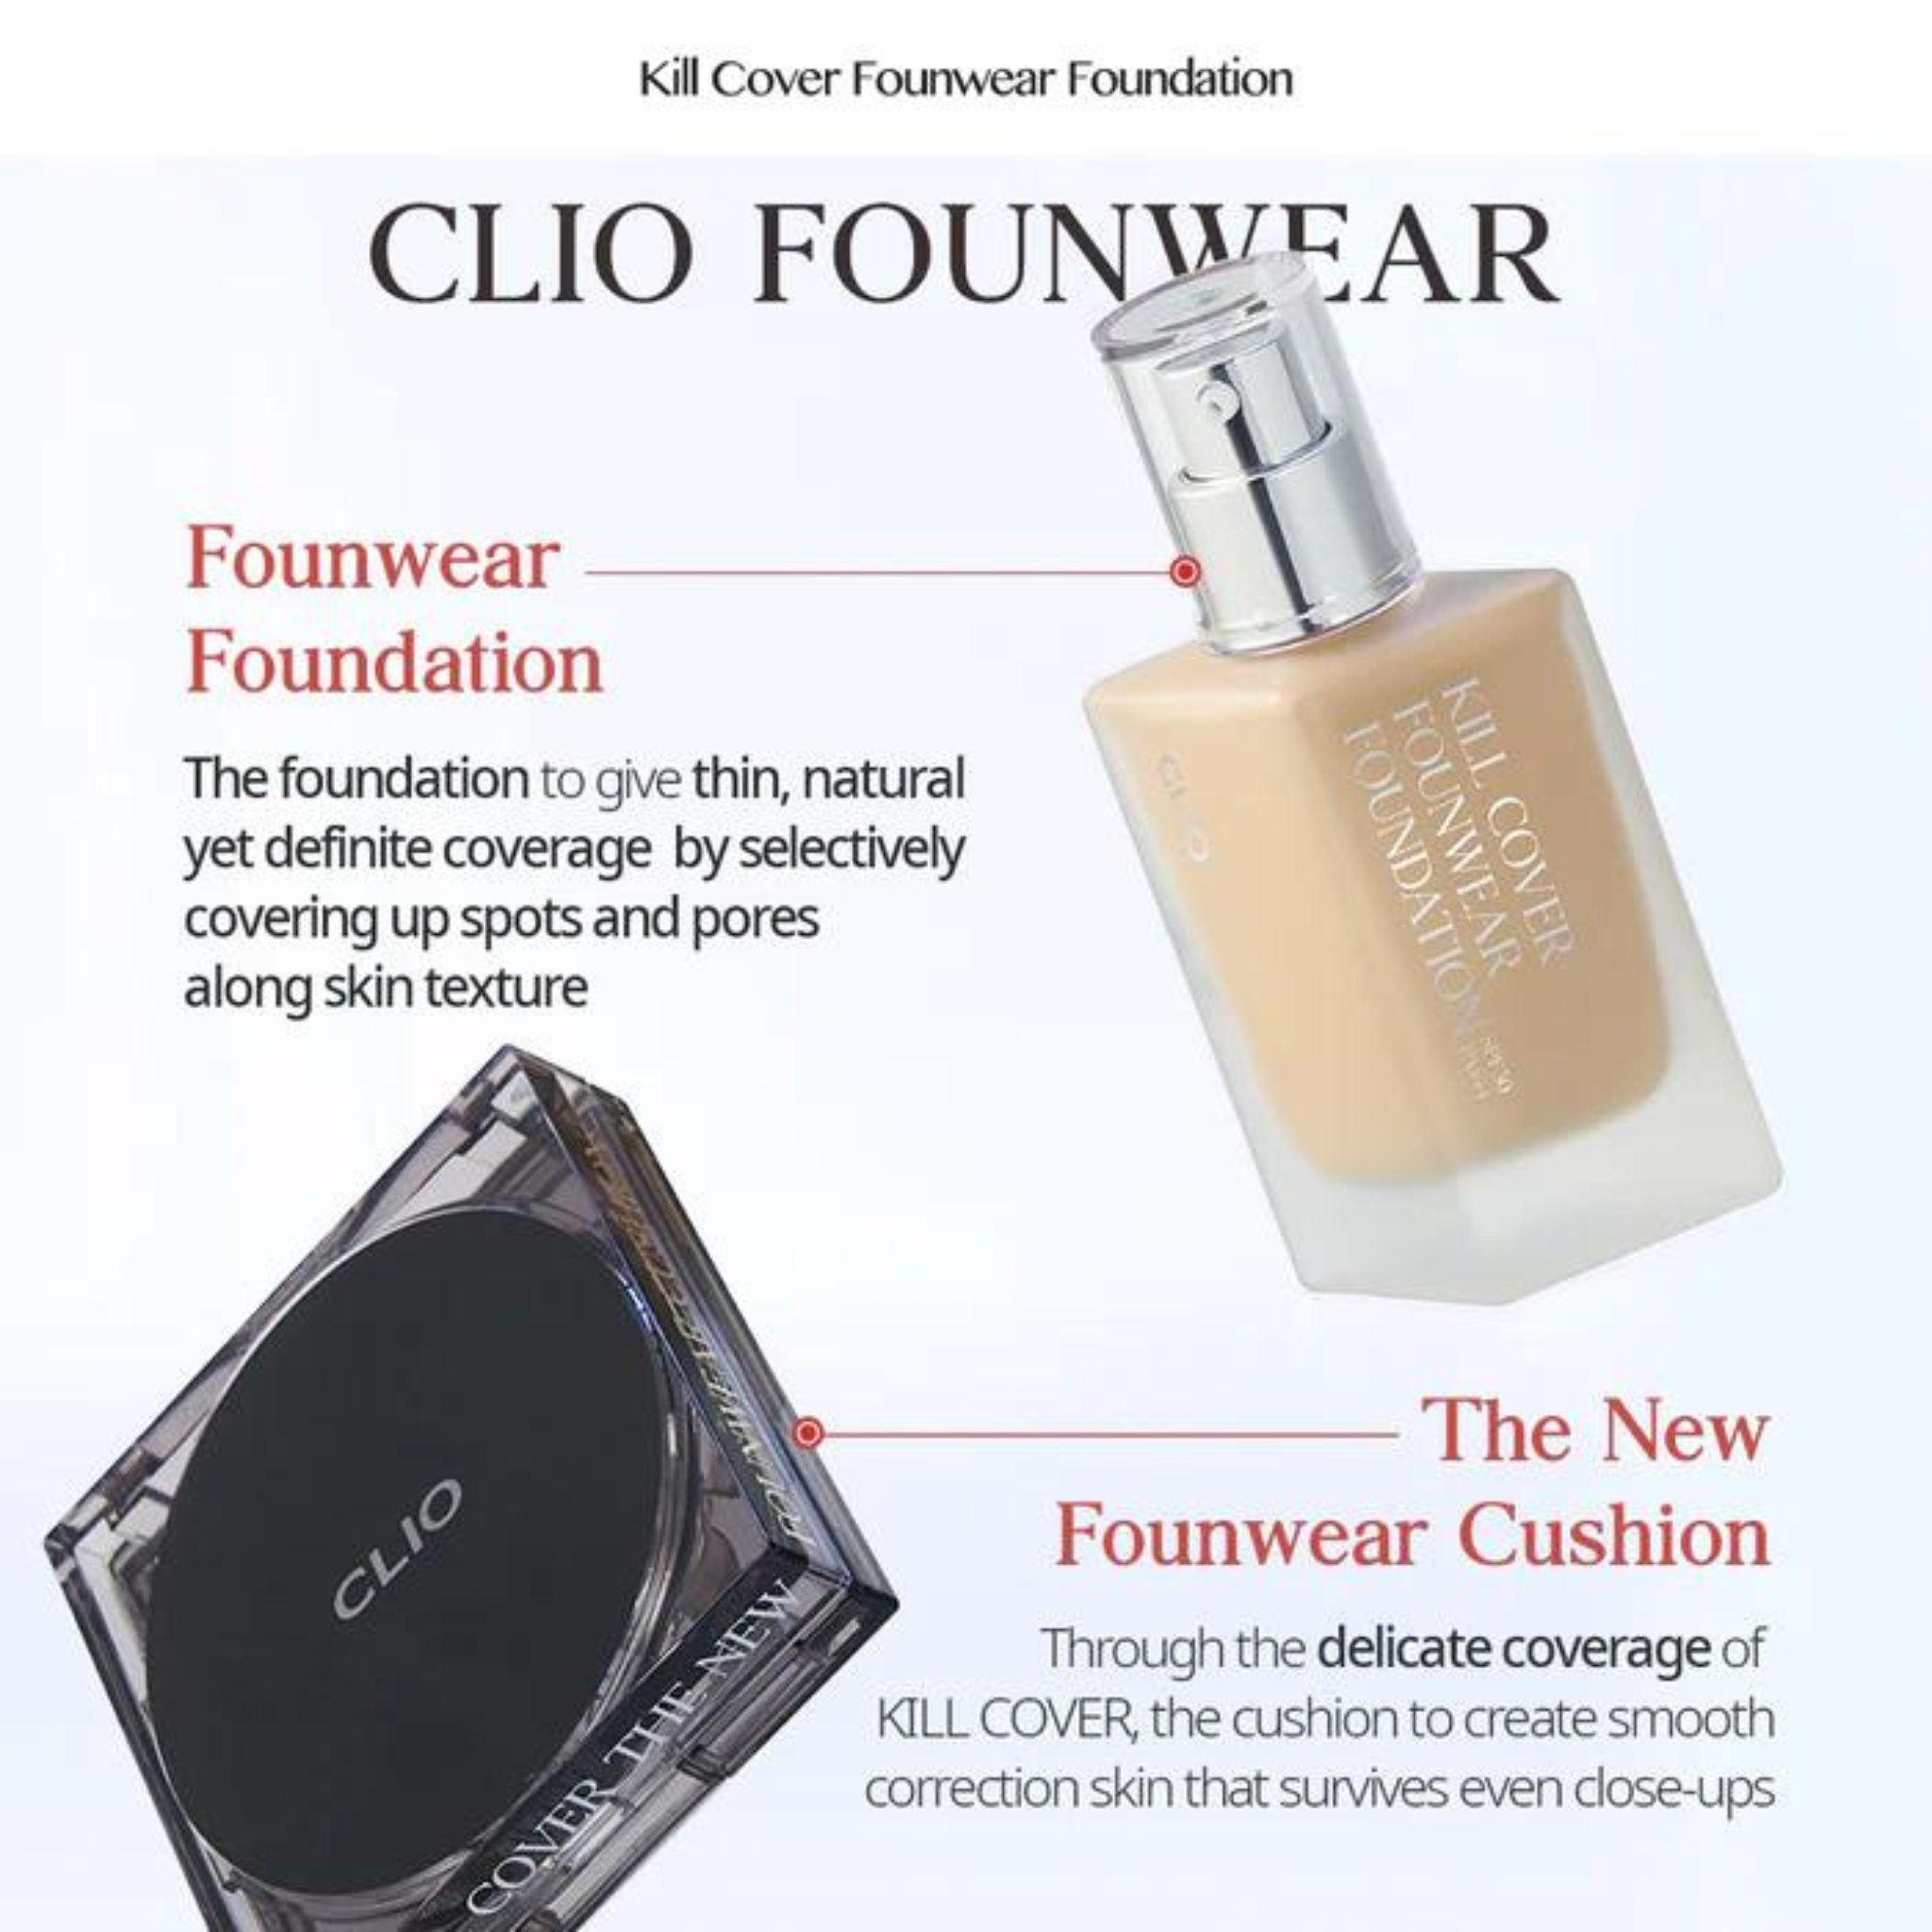 CLIO Kill Cover Founwear Foundation Mini (13g)